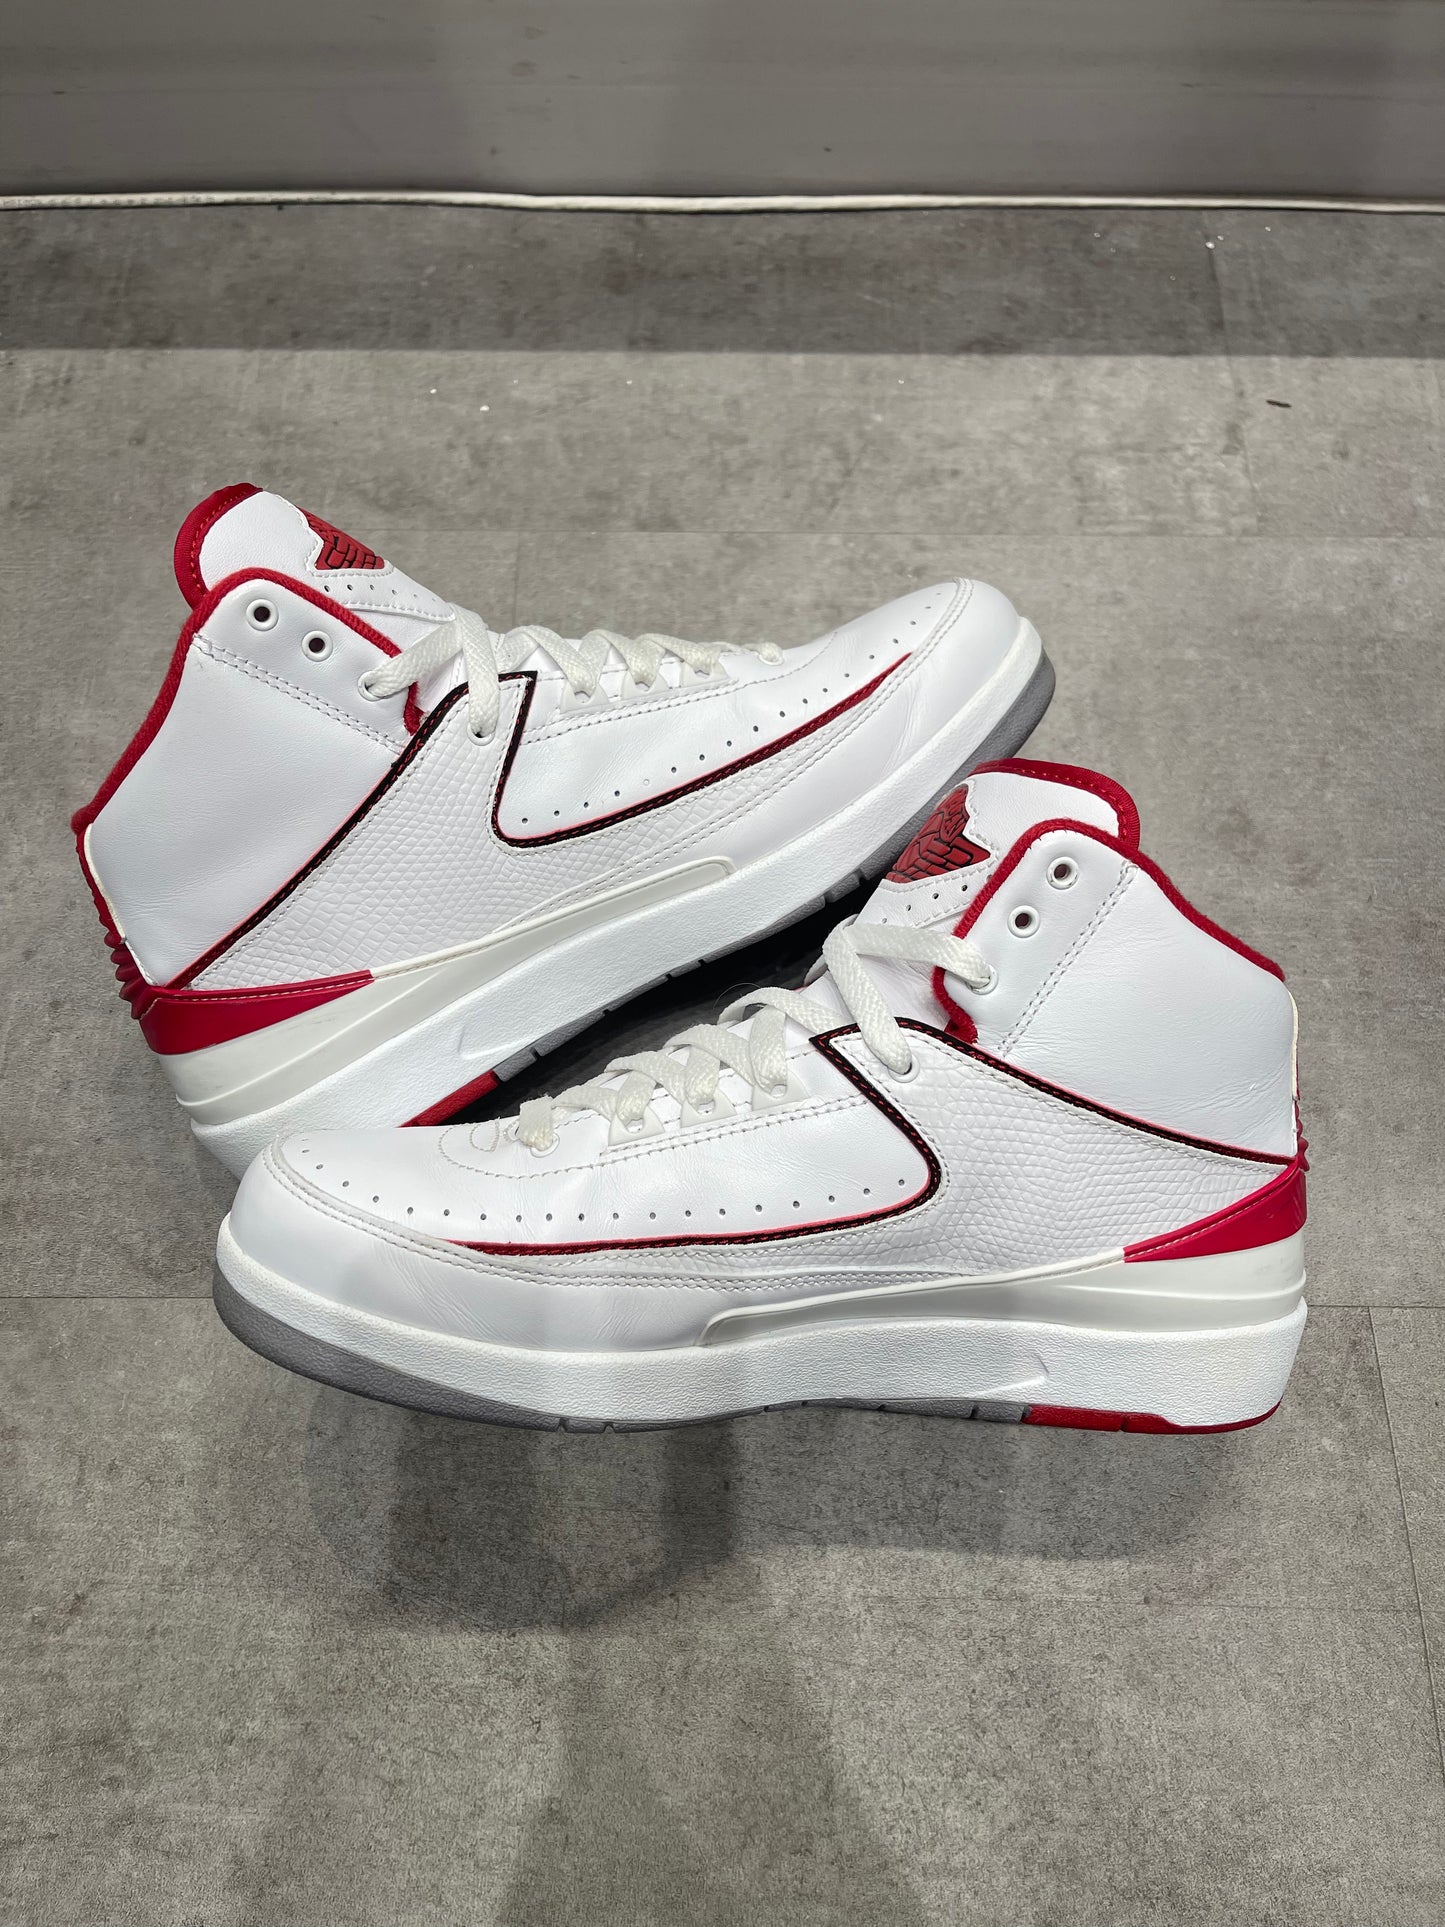 Jordan 2 White Red (2014) (Preowned)